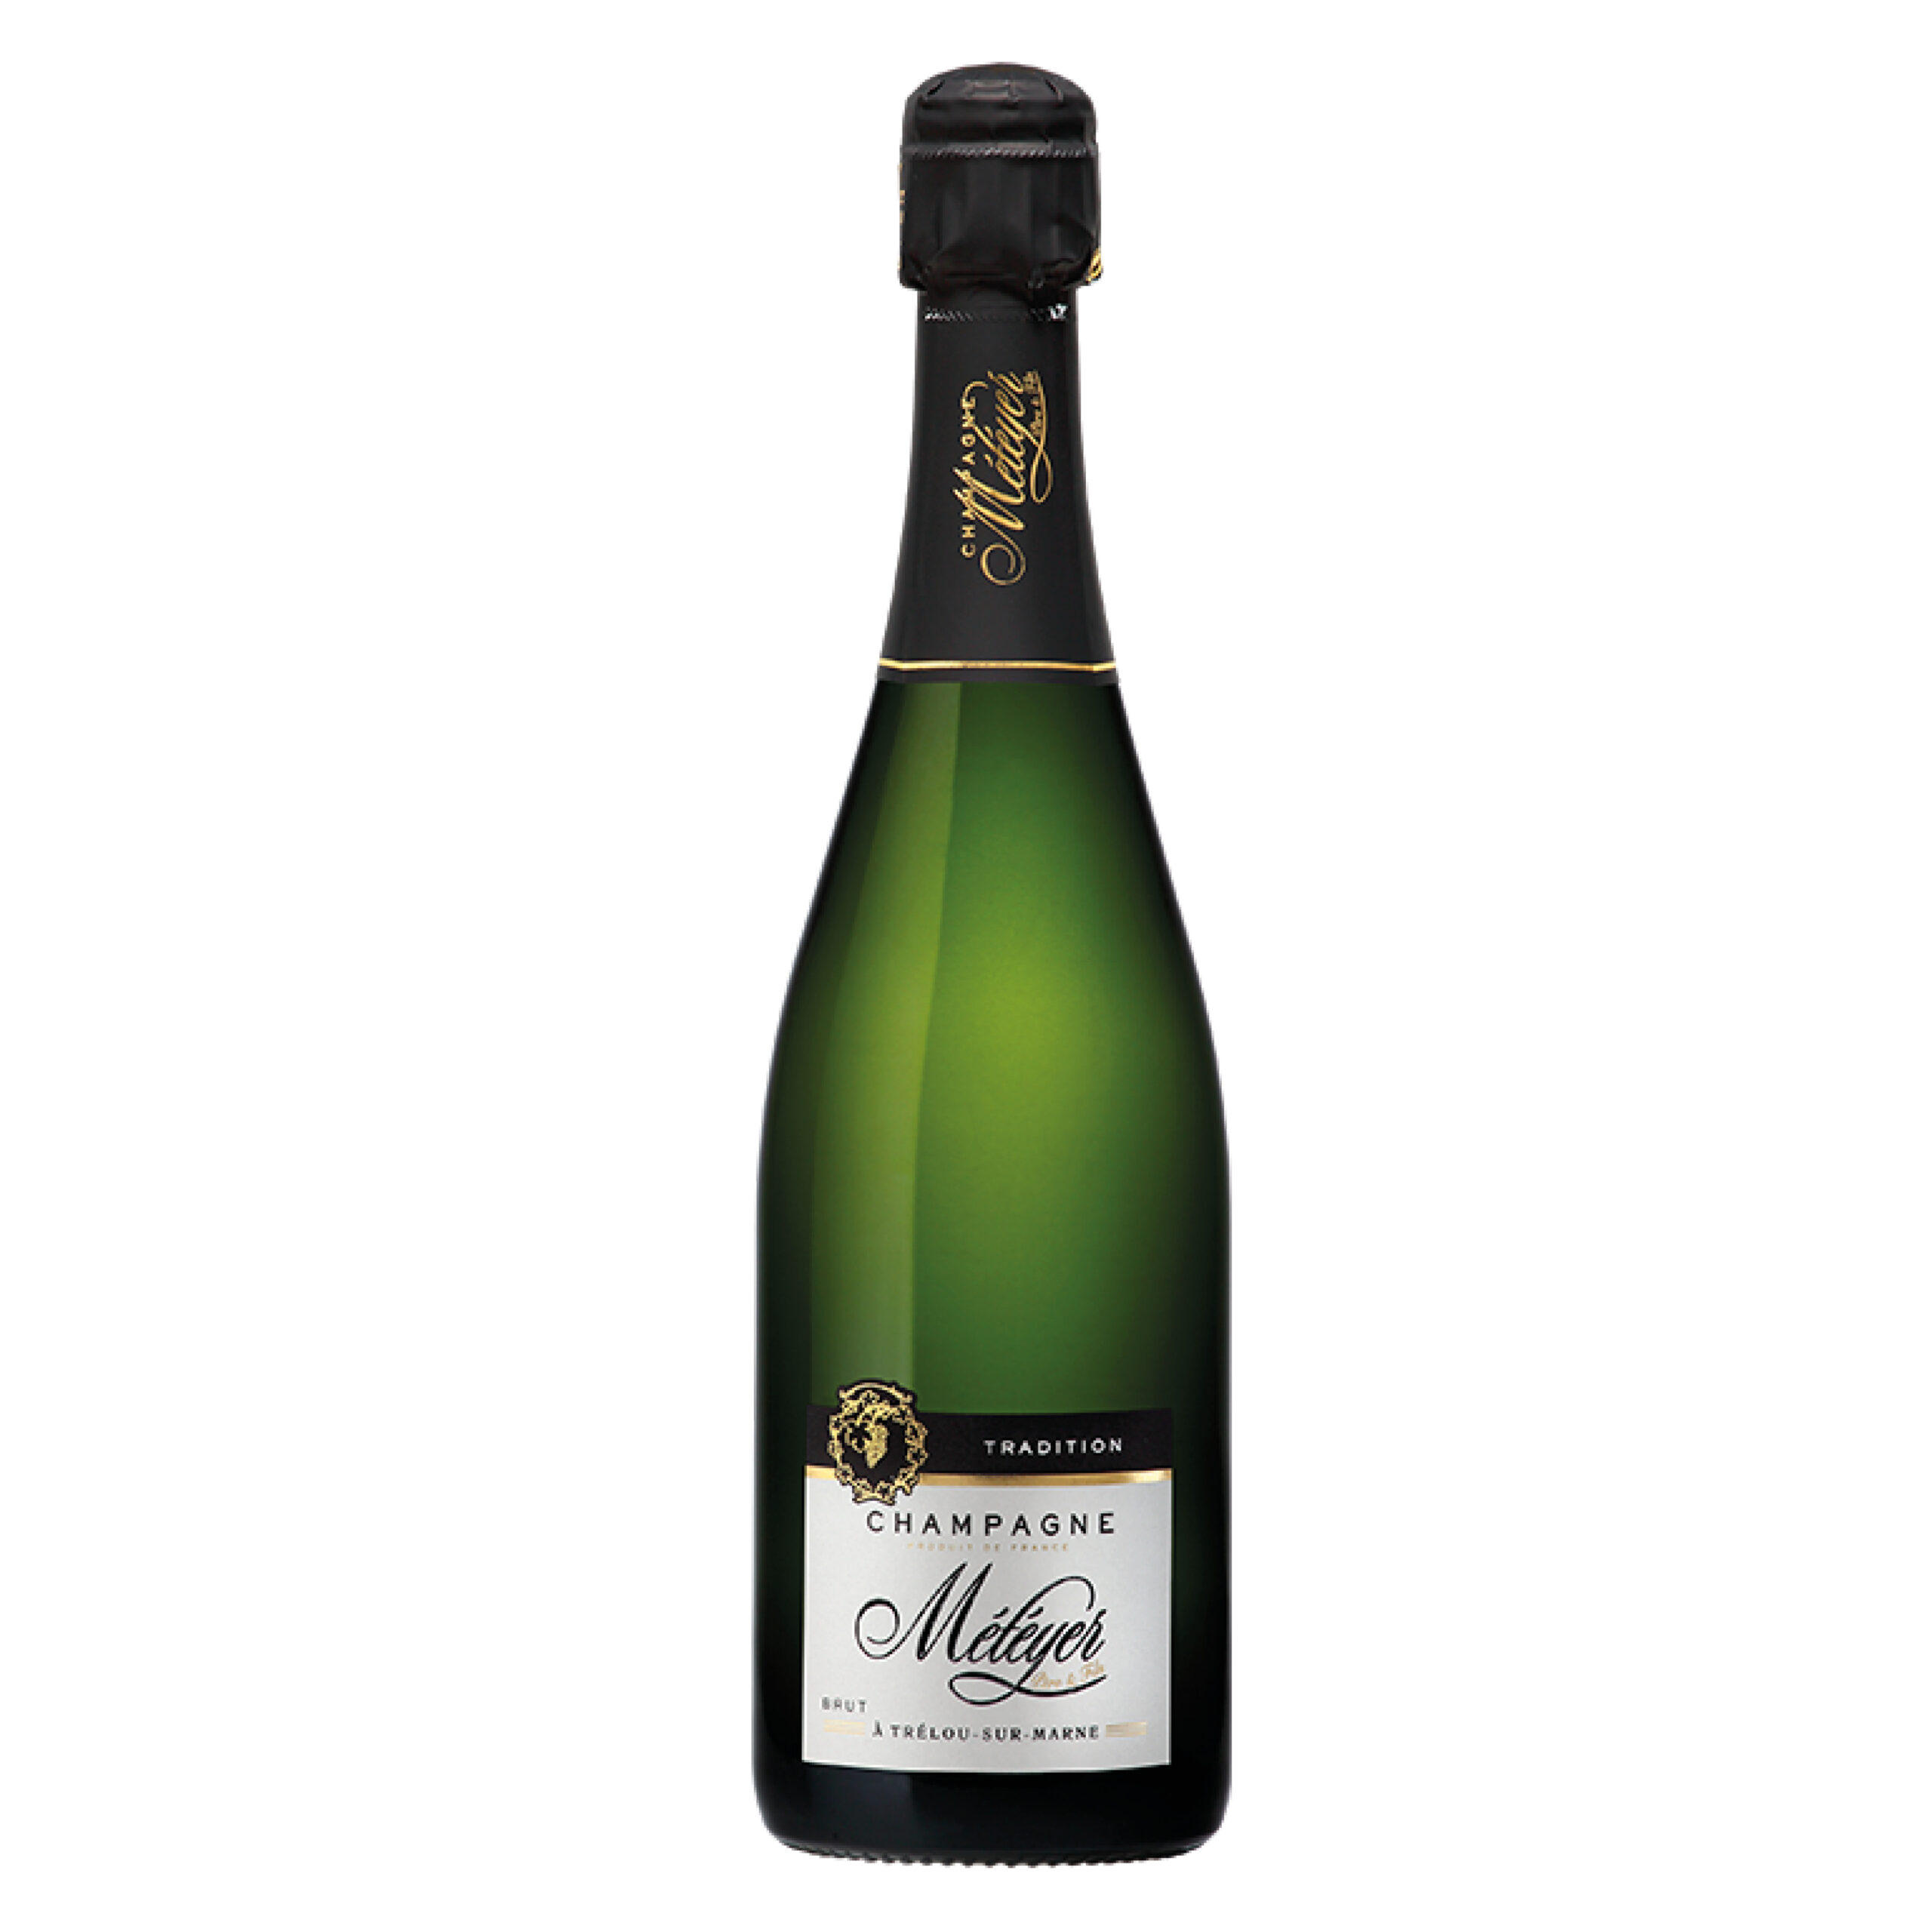 Husets champagne fra Météyer. En allround og klassisk champagne med ligeligt fordeling af druerne Chardonnay, Pinot Noir og Meunier